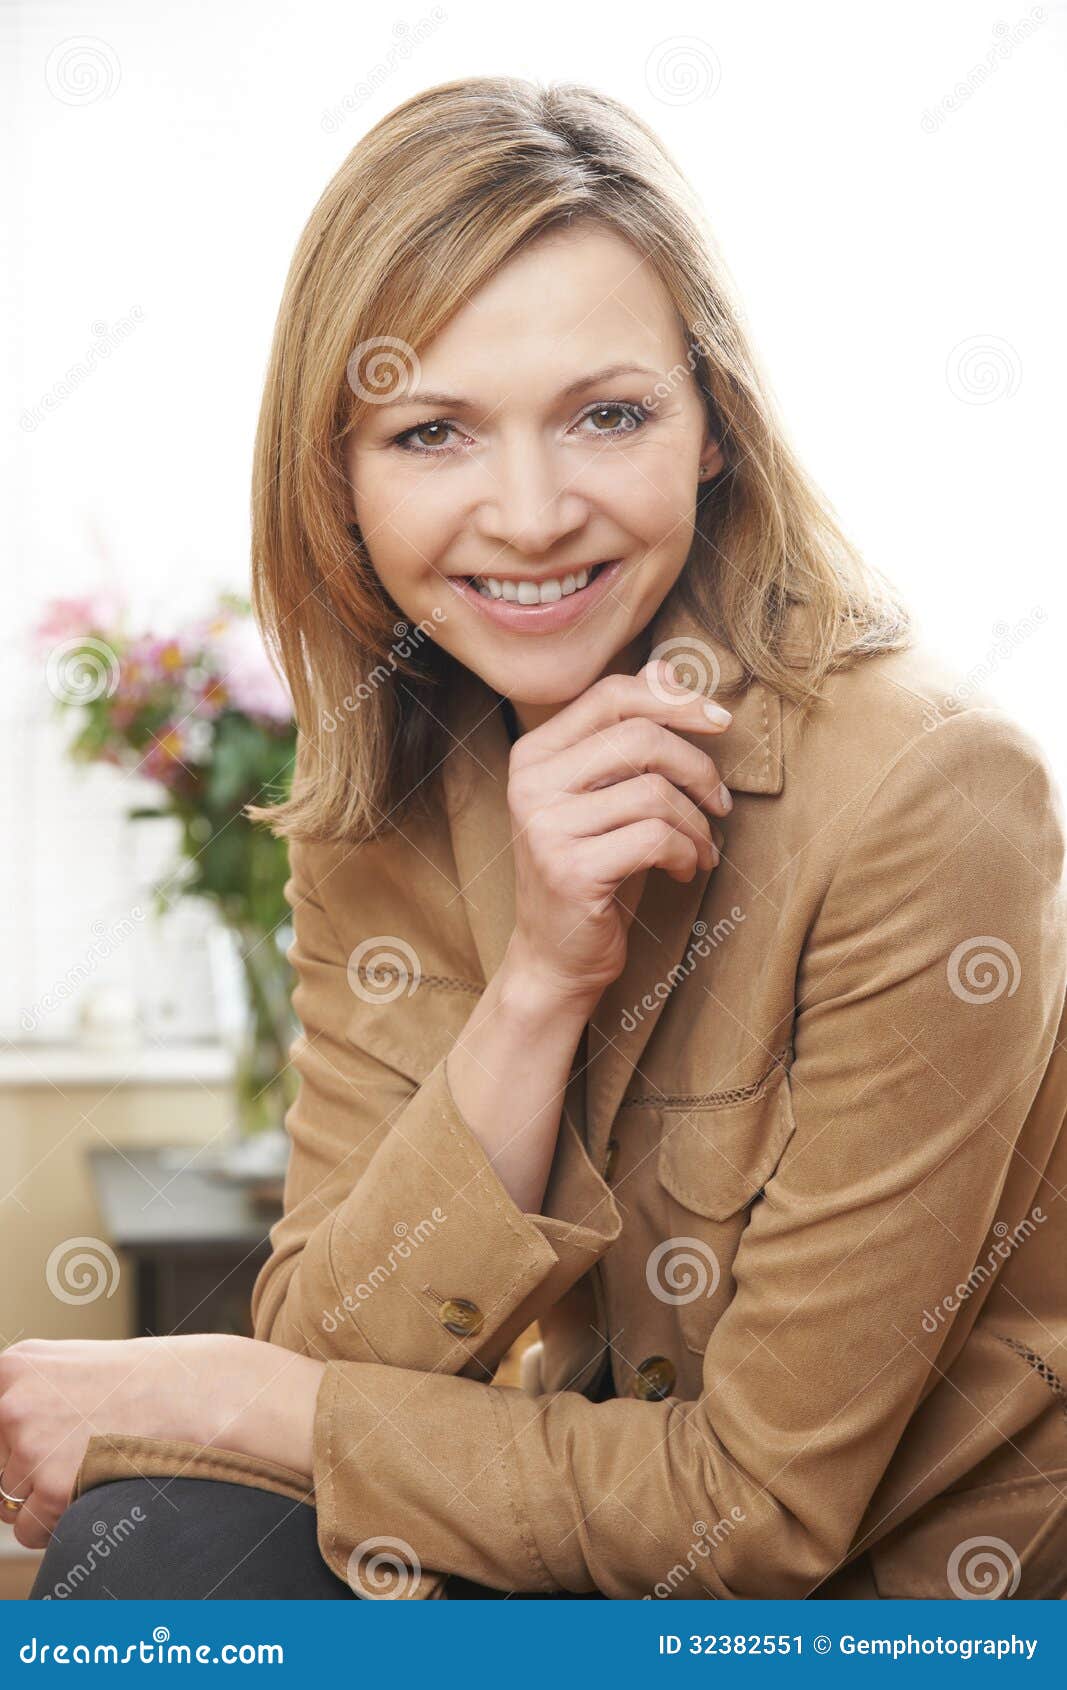 美丽的成熟微笑的妇女 库存图片. 图片 包括有 年长, 表示, 图象, 高雅, 面部, 女性, 电话会议 - 45351937